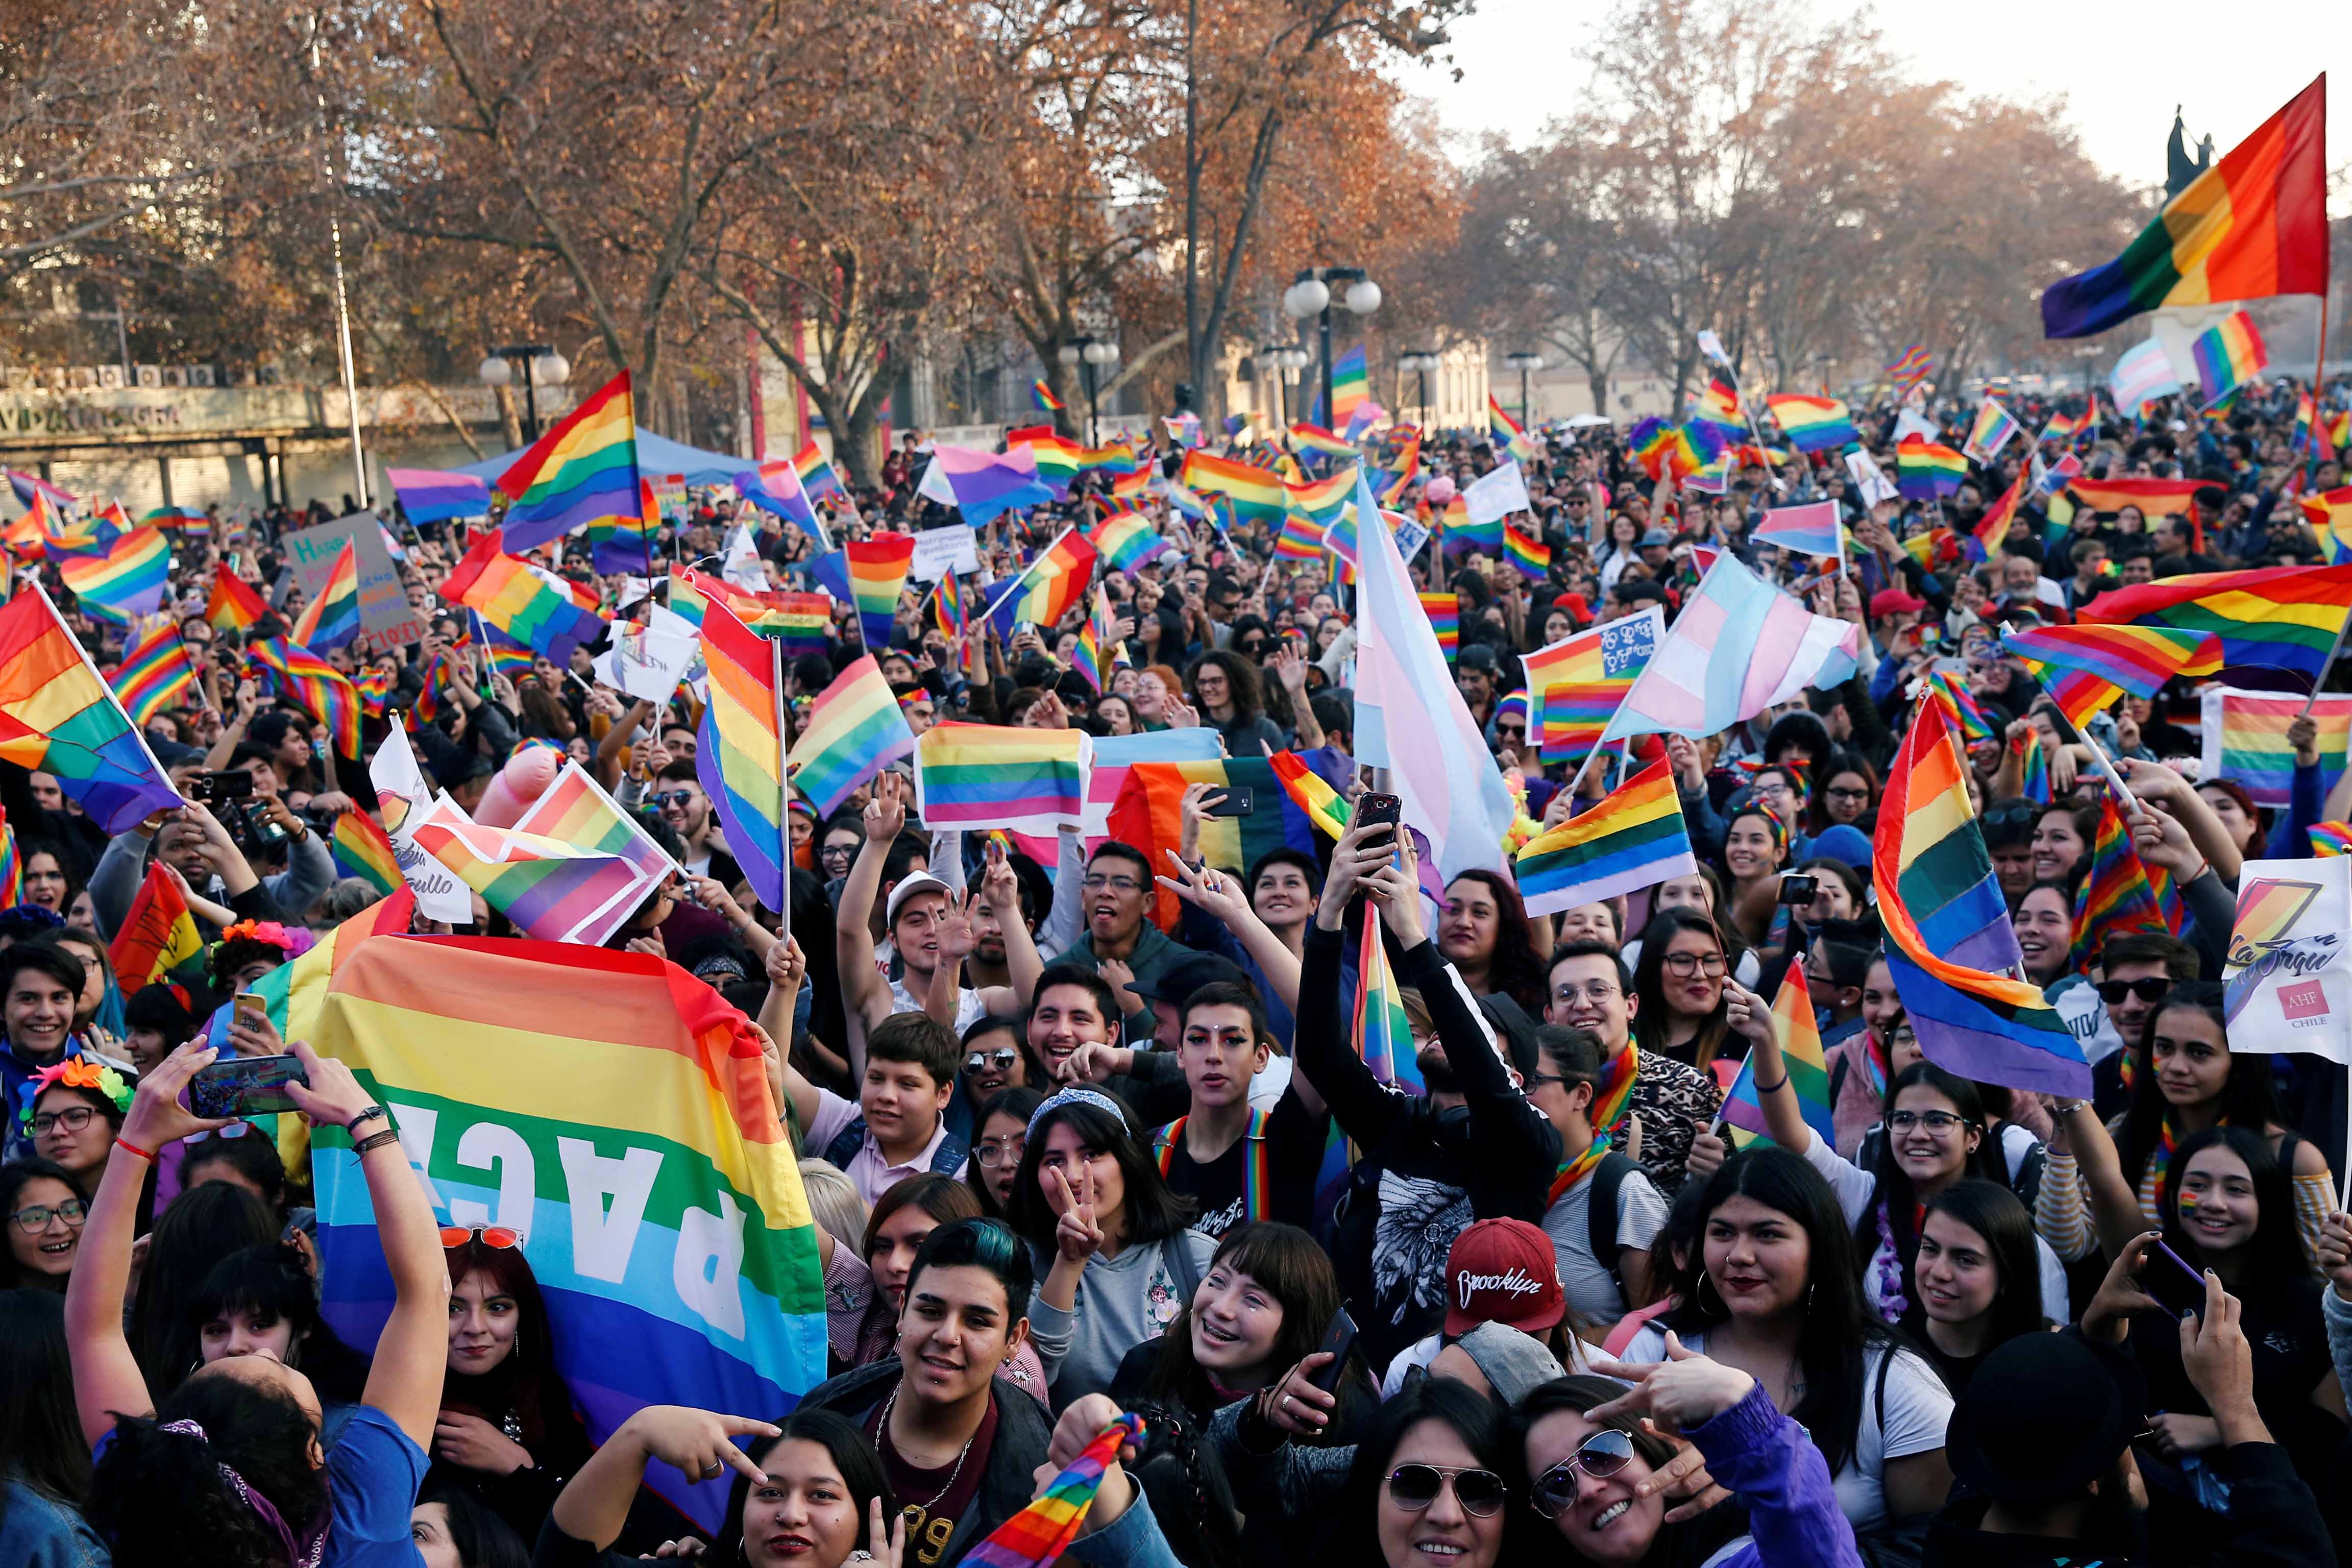 Personas participan en la celebración anual de la "Marcha del Orgullo" en apoyo a la comunidad LGBT, en Santiago, Chile, el 22 de junio de 2019.